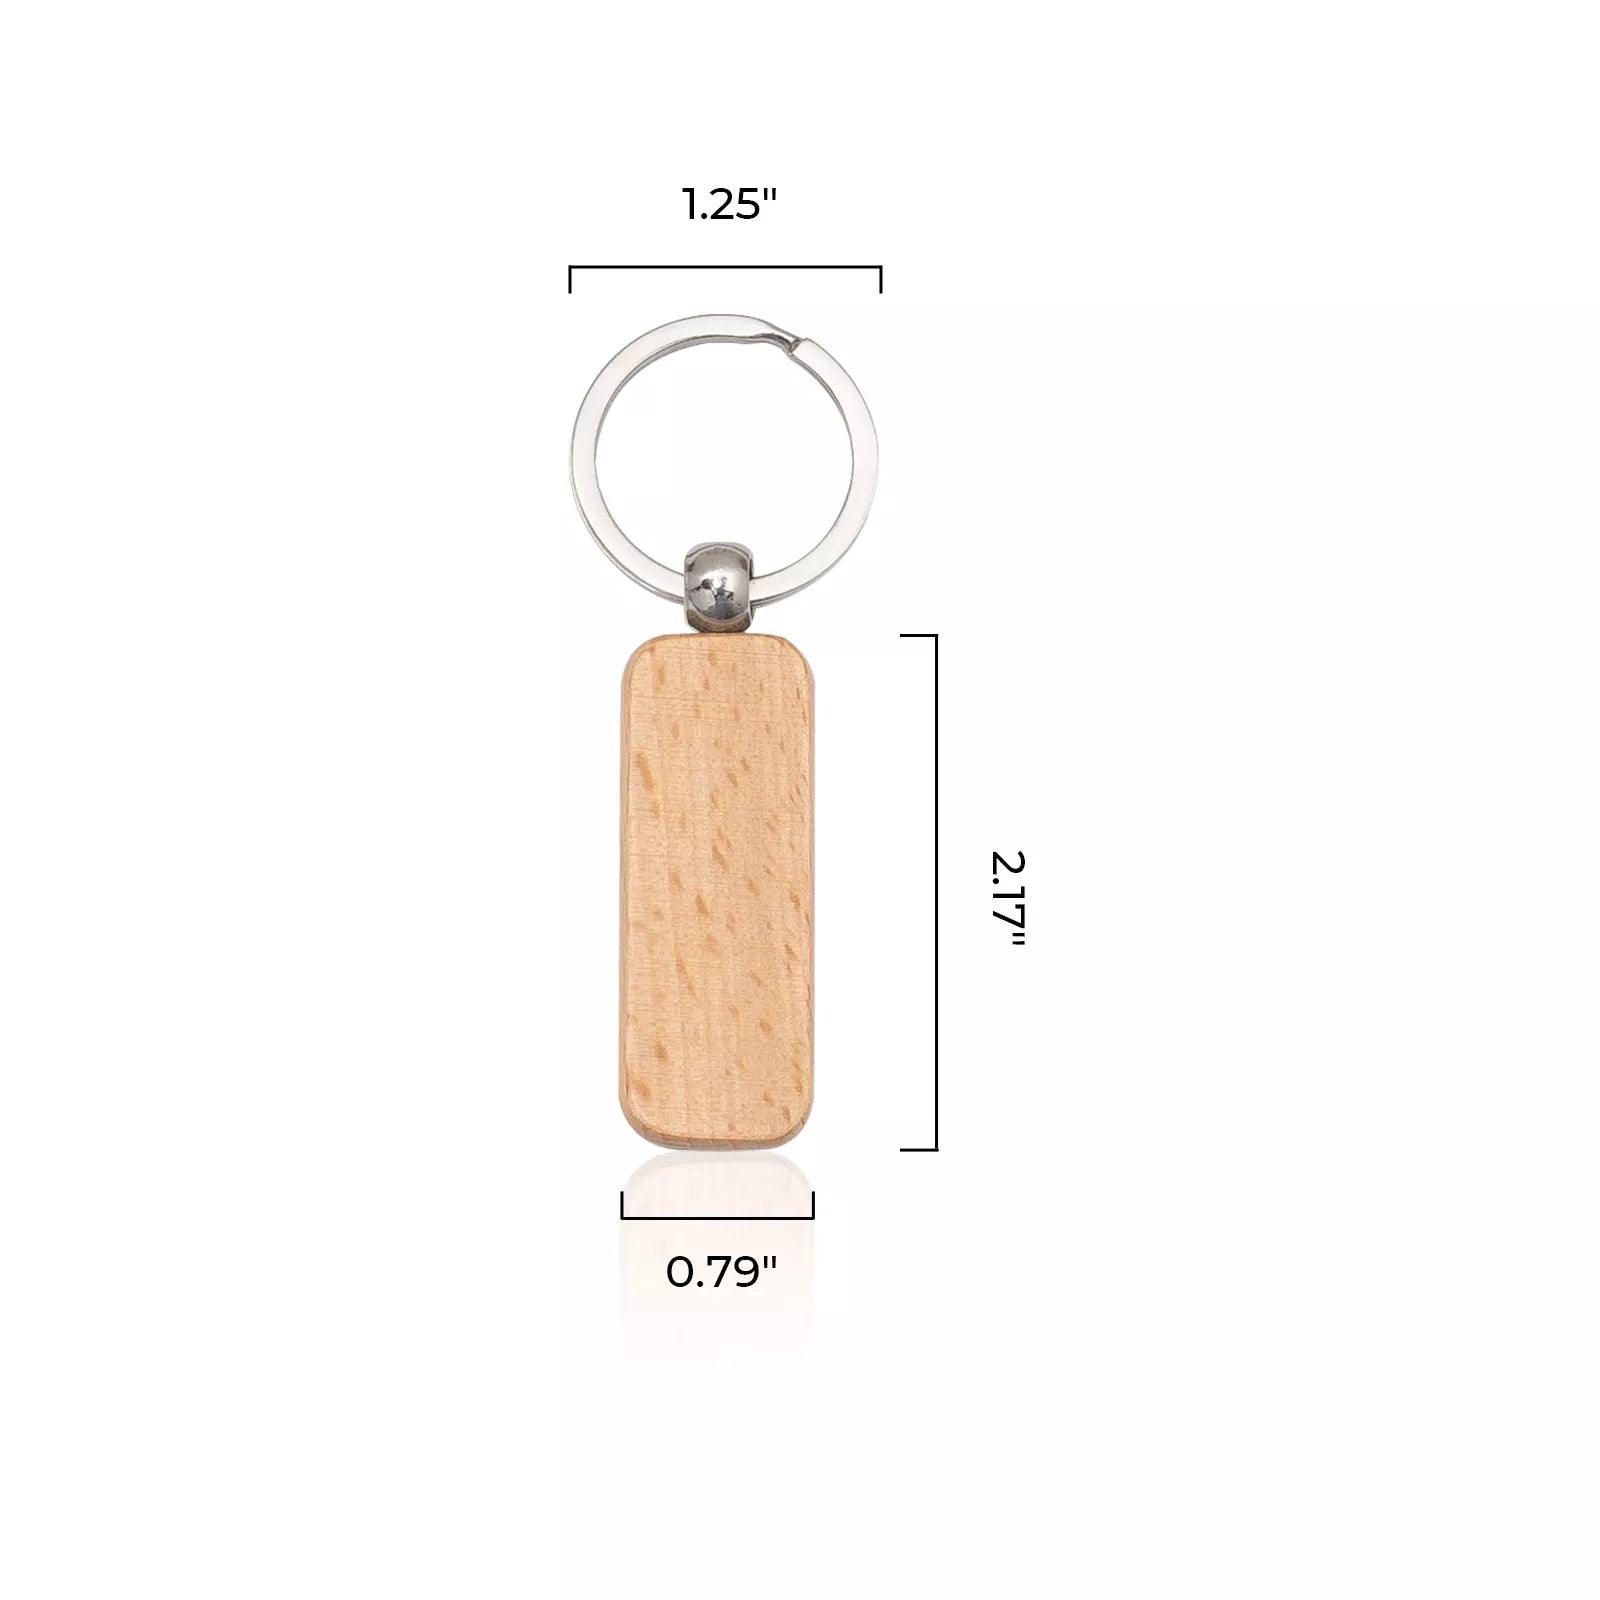 Porte-clés en bois (10 pièces) - xTool France Store